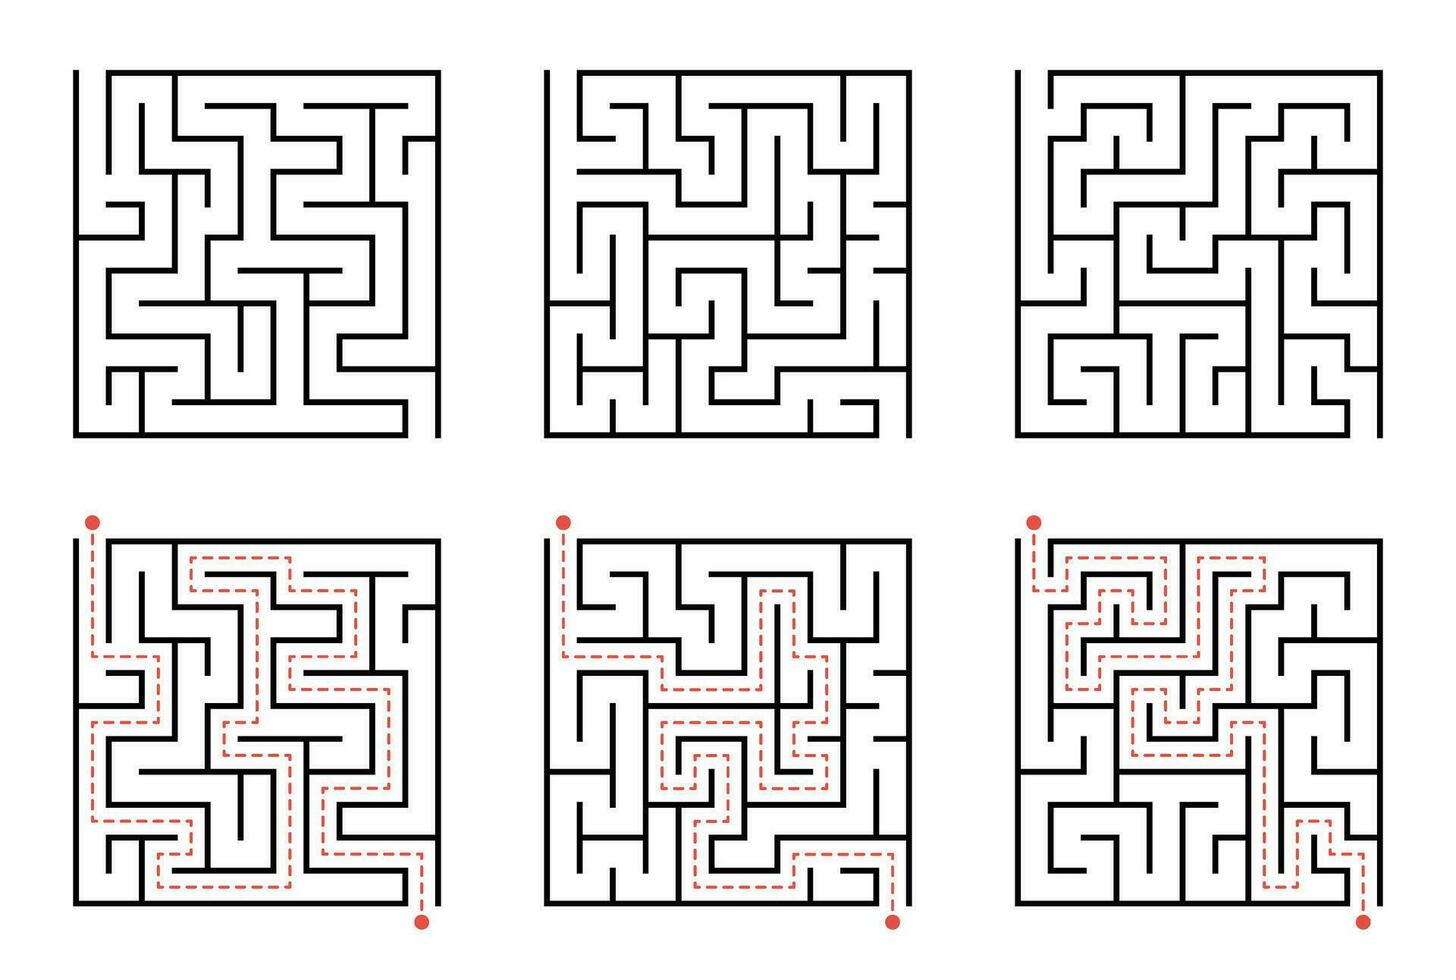 labyrint lijn patroon. rechthoek labyrint met binnenkomst en Uitgang. vector labyrint van laag of medium complexiteit.